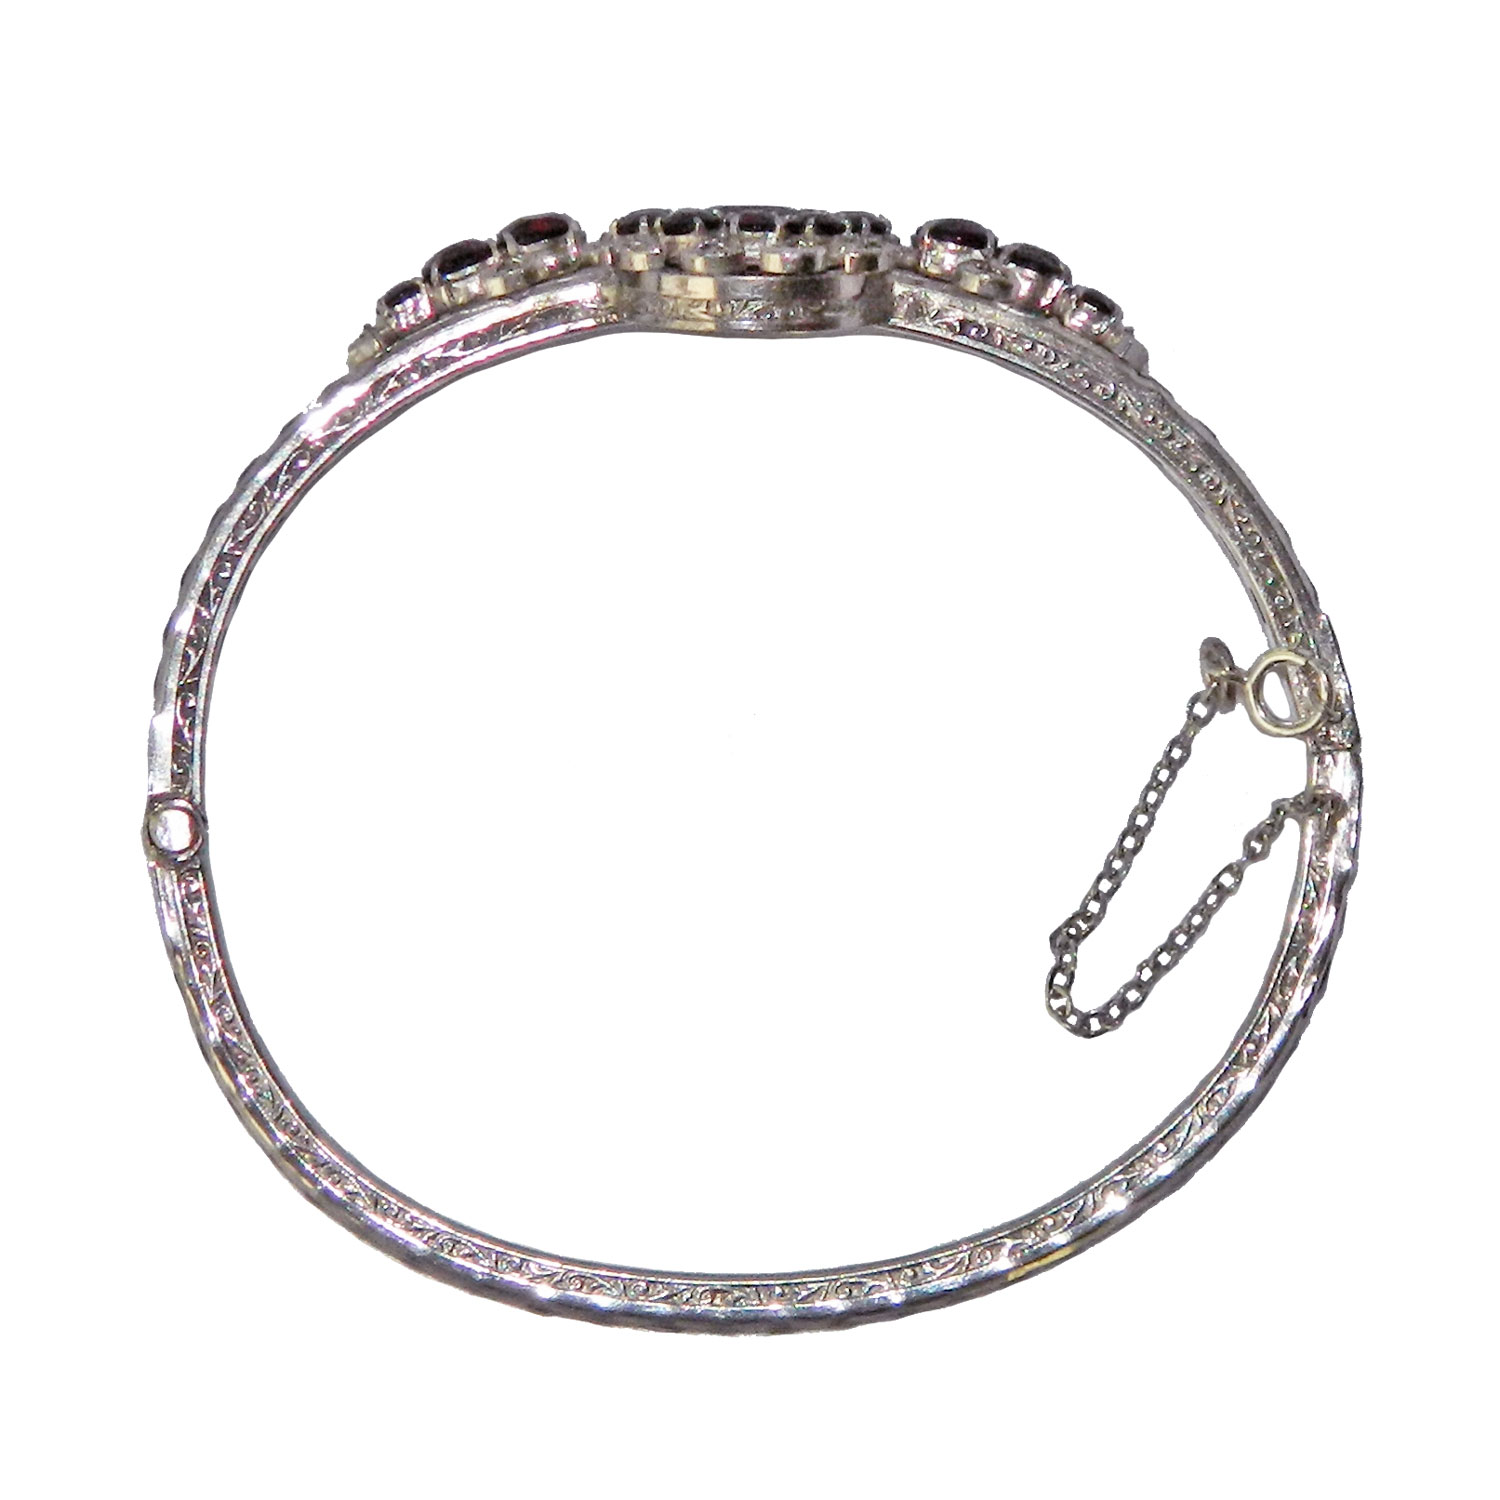 Silver garnet bracelet